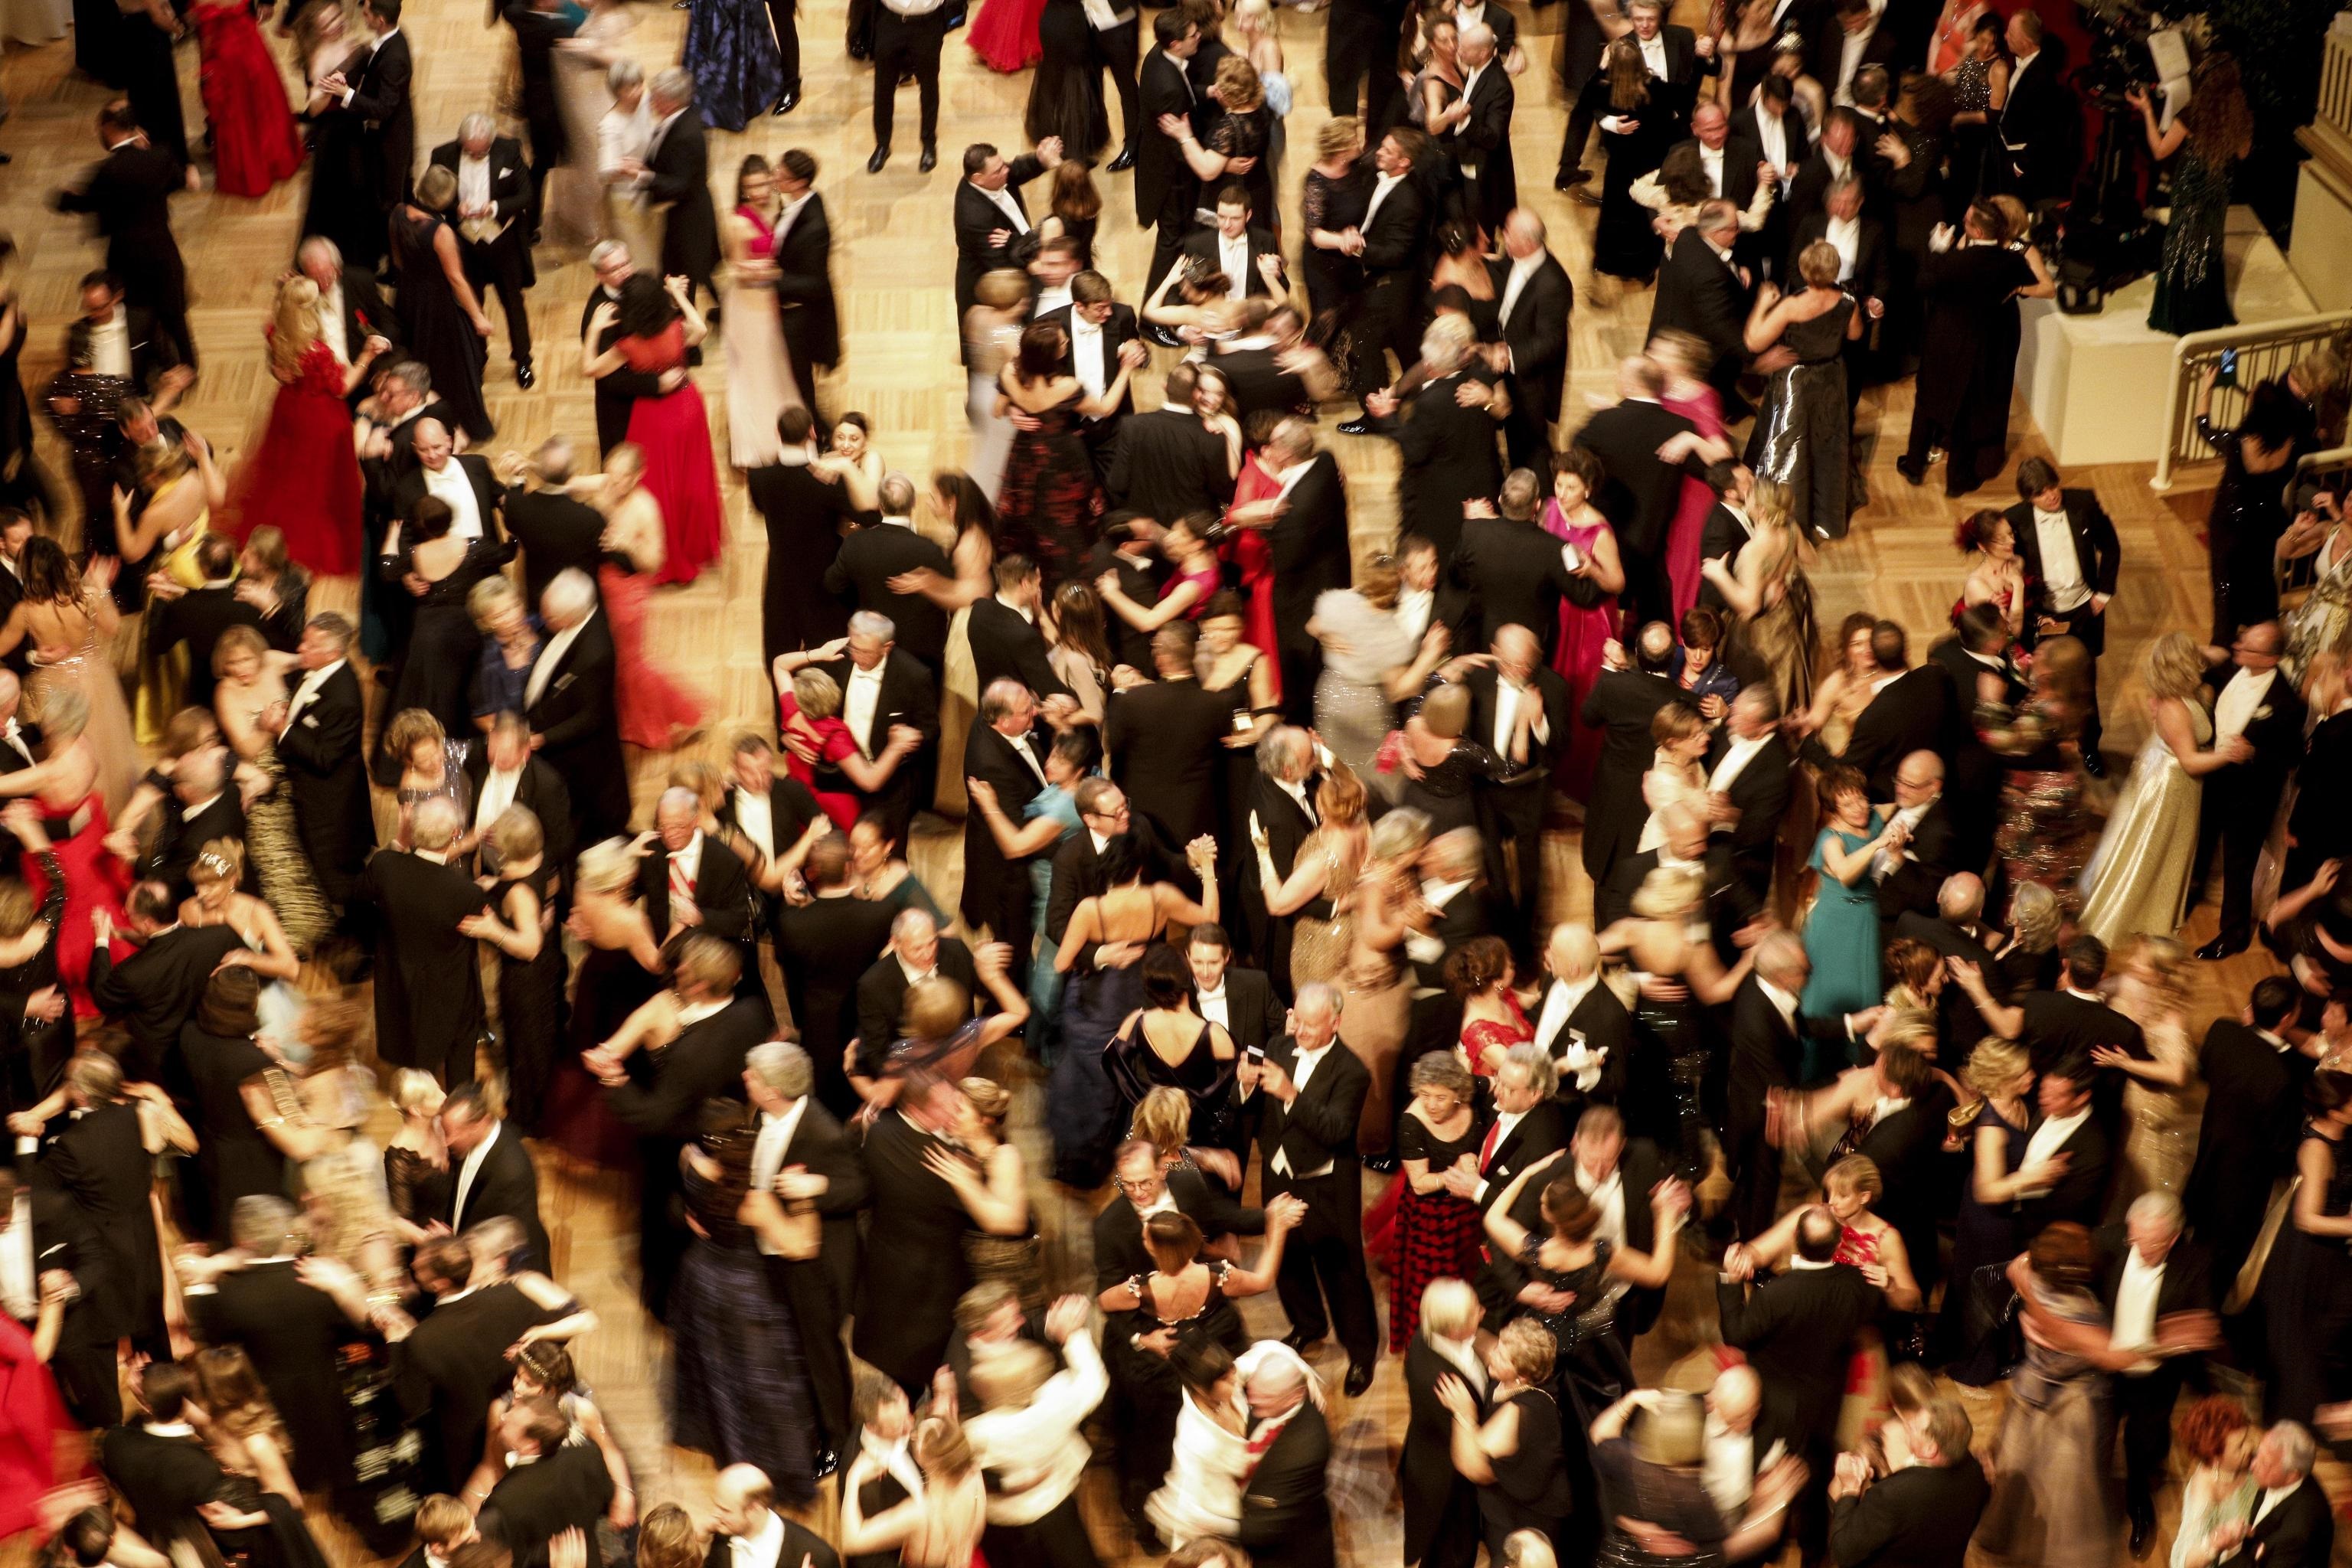 Inaugurato nel 1854, il ballo è una delle più antiche tradizioni delle classi nobiliari europee